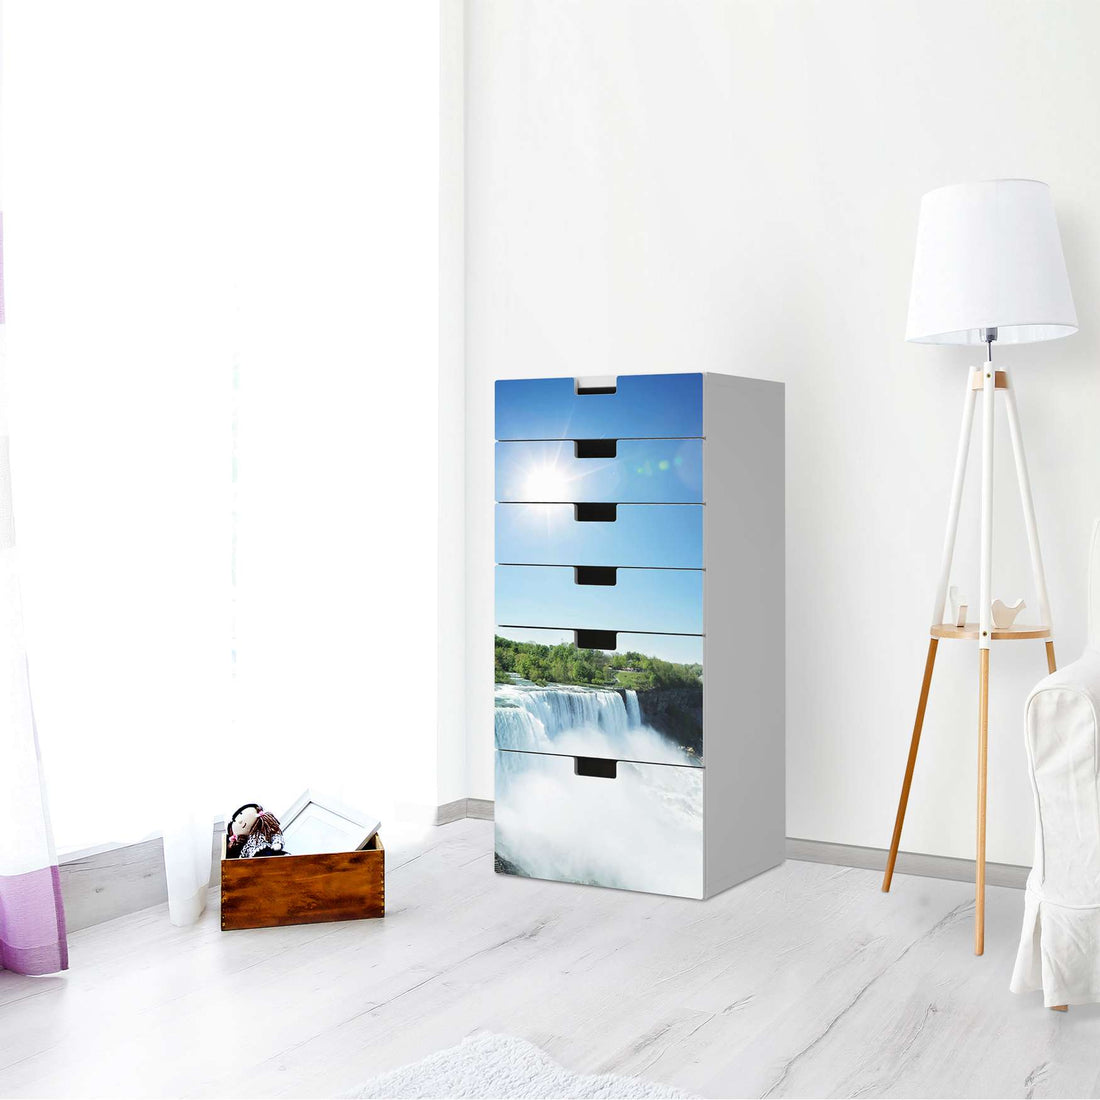 Klebefolie für Möbel Niagara Falls - IKEA Stuva Kommode - 6 Schubladen - Wohnzimmer